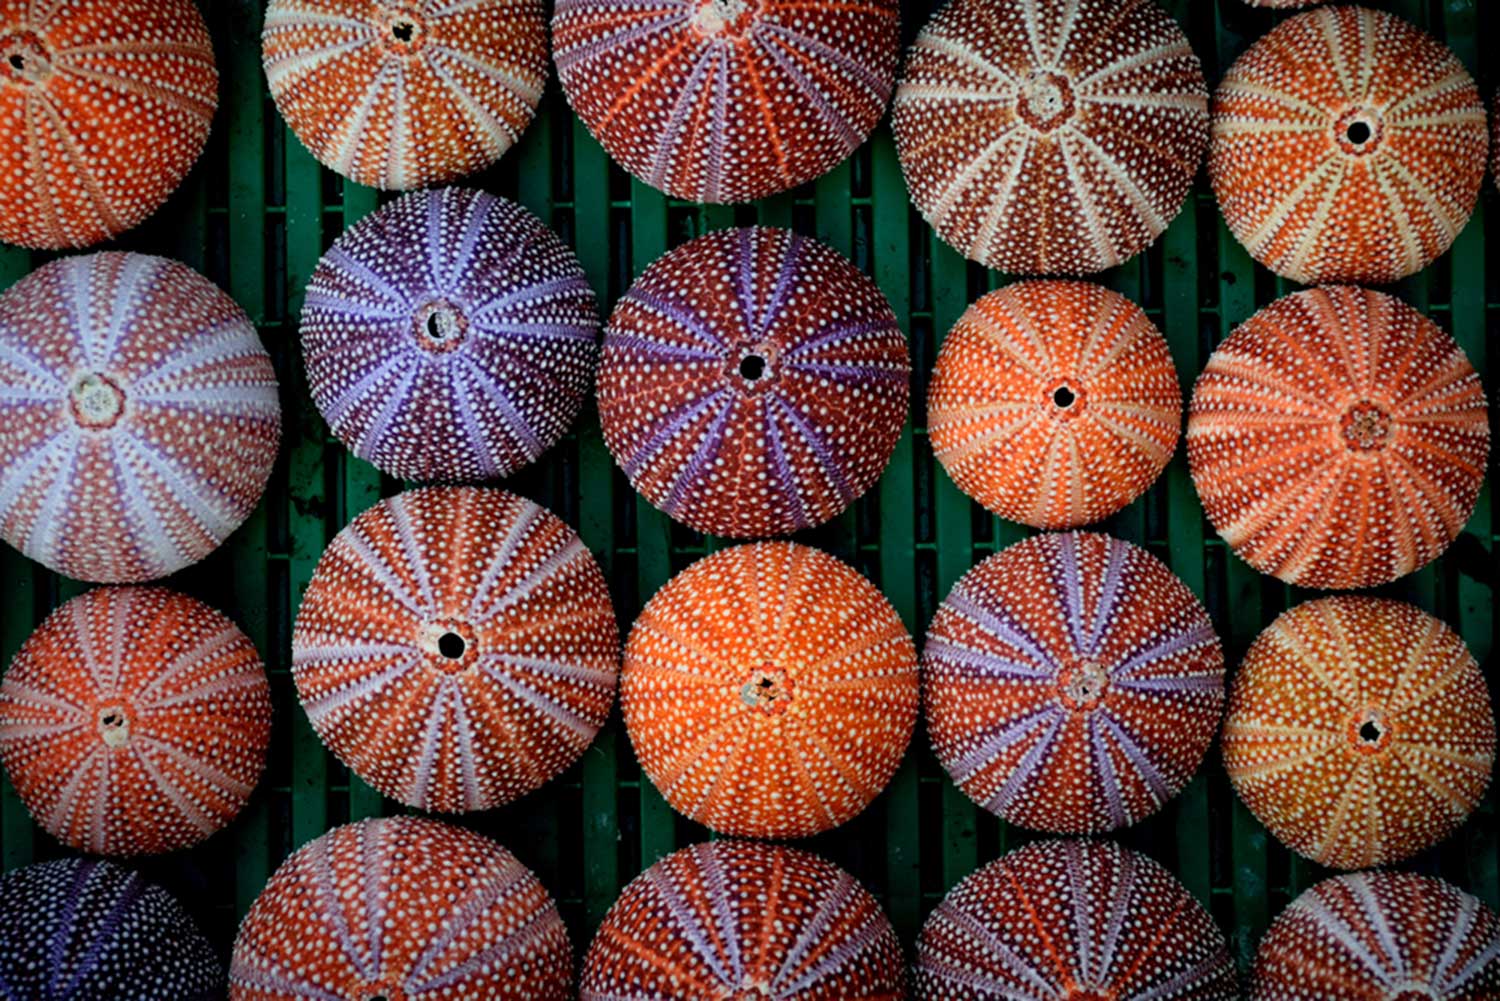 ANI_Multicolored-sea-urchin-shell_1429438134.jpg